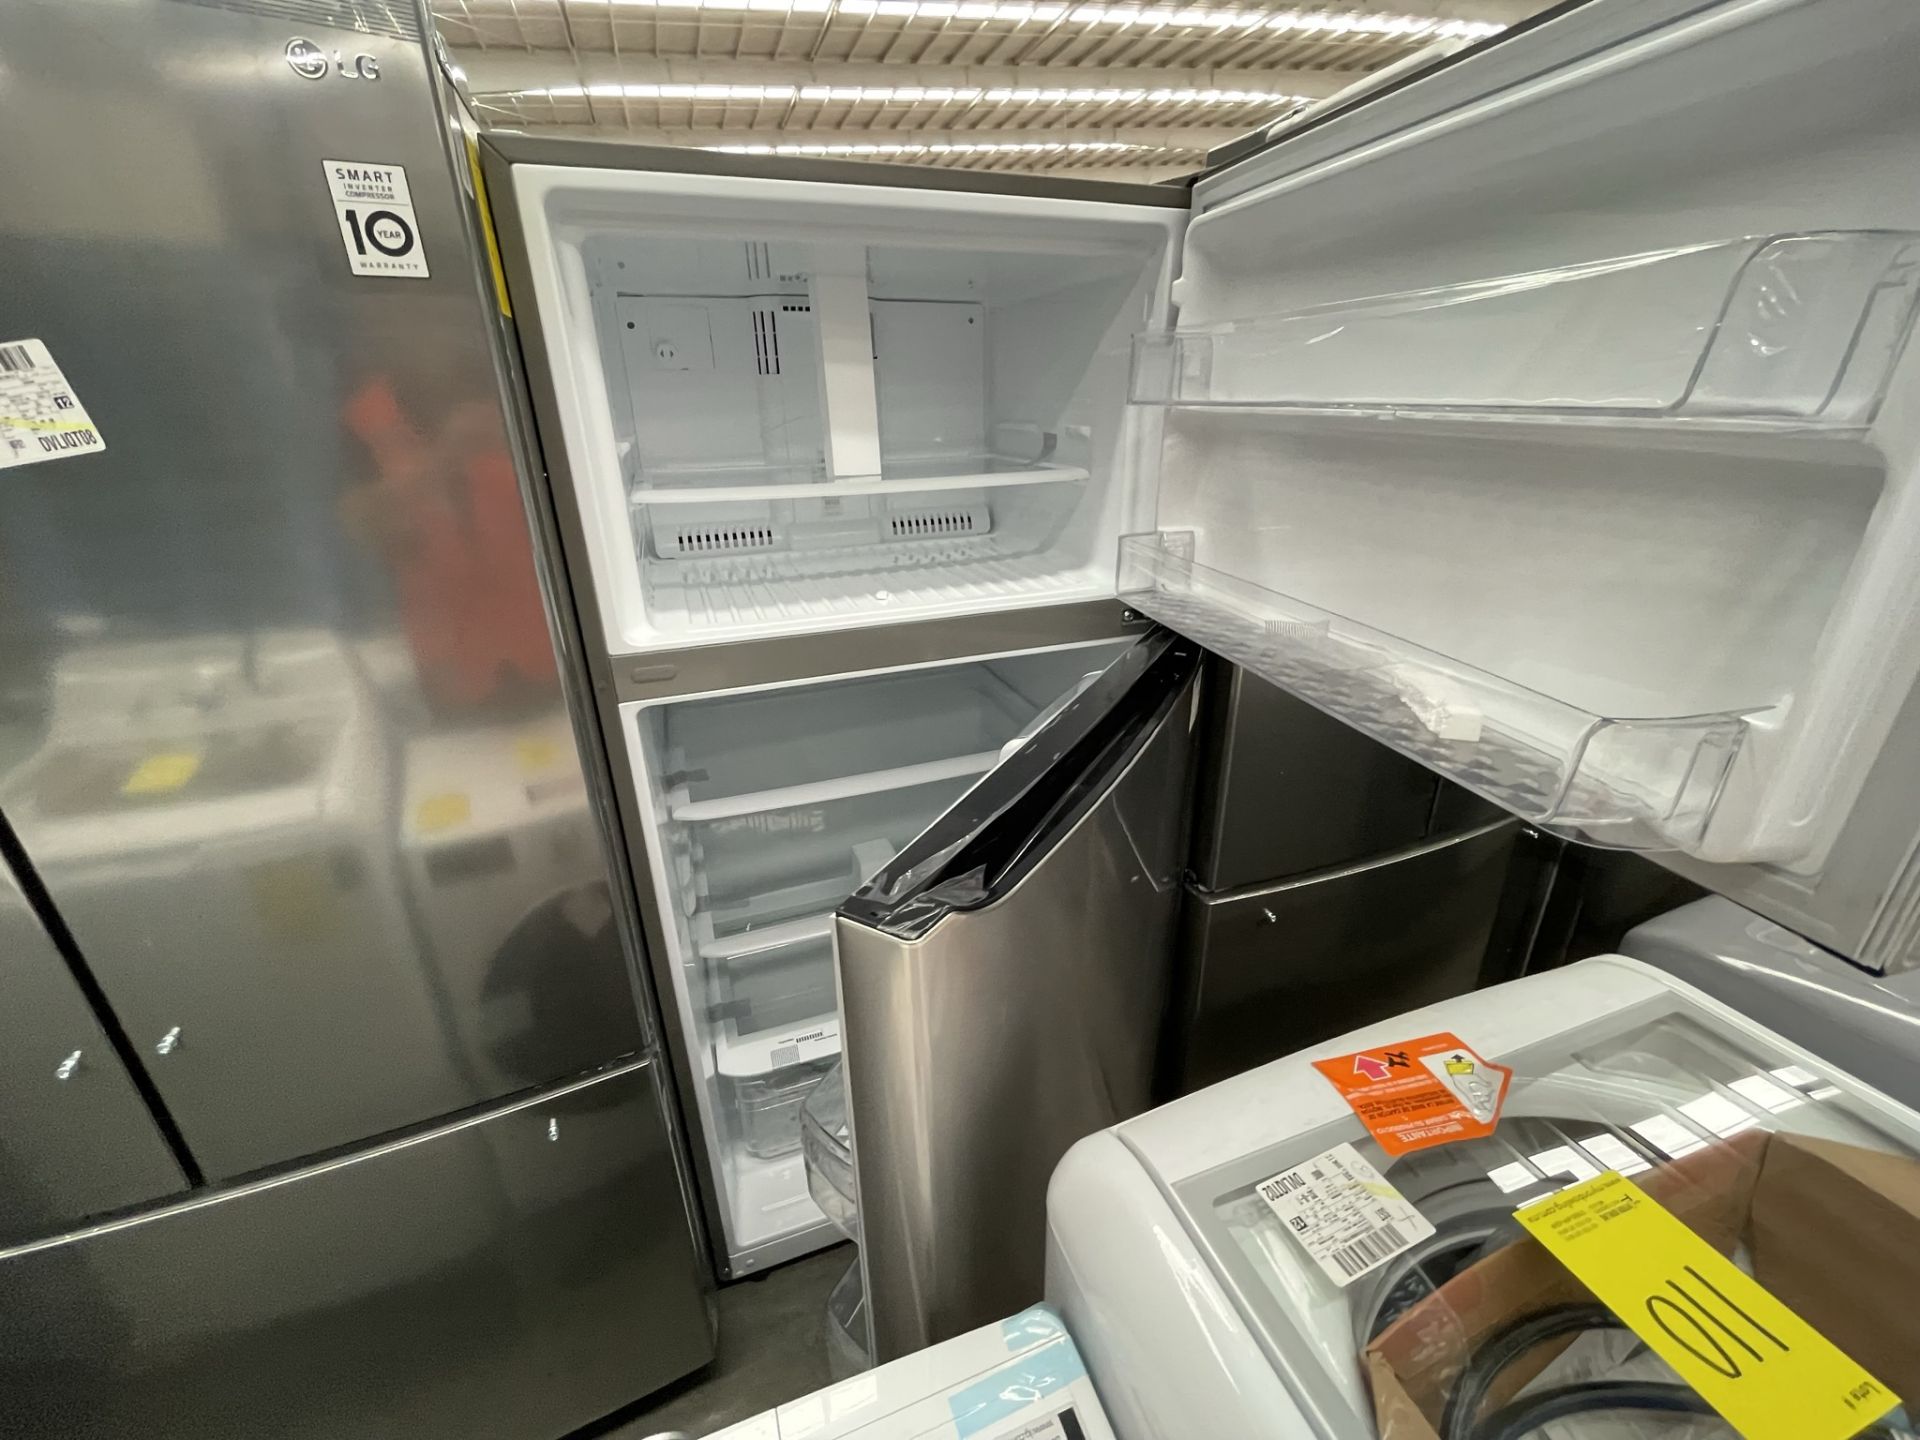 (EQUIPO NUEVO) 1 Refrigerador Marca LG, Modelo GT24BS, Serie V1C601, Color GRIS, LB-619781; (Nuevo, - Image 9 of 10